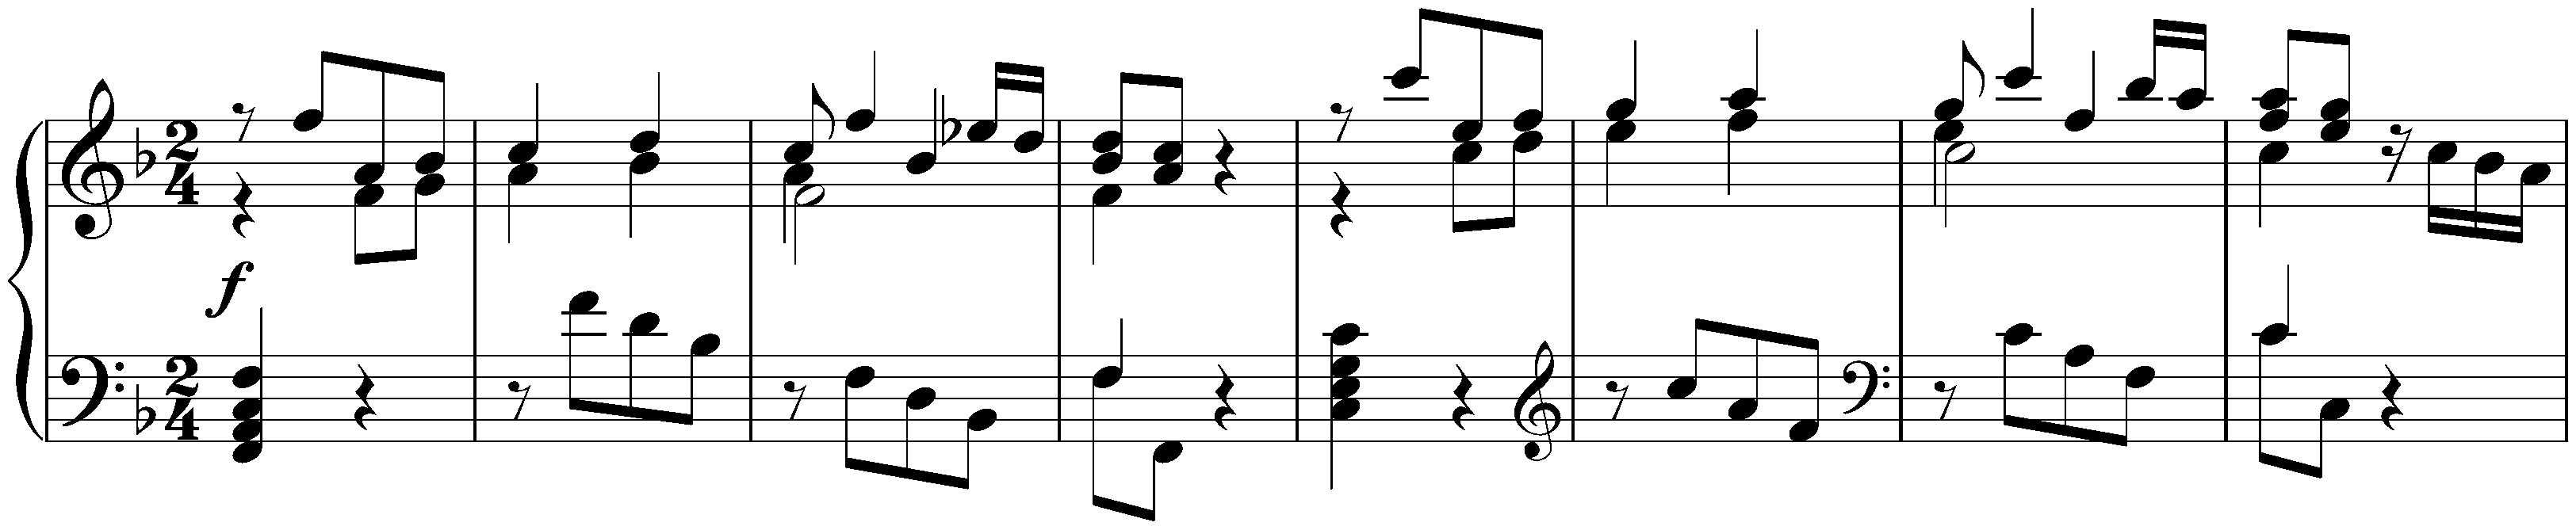 Italian Concerto in F major, BWV 971; 1.